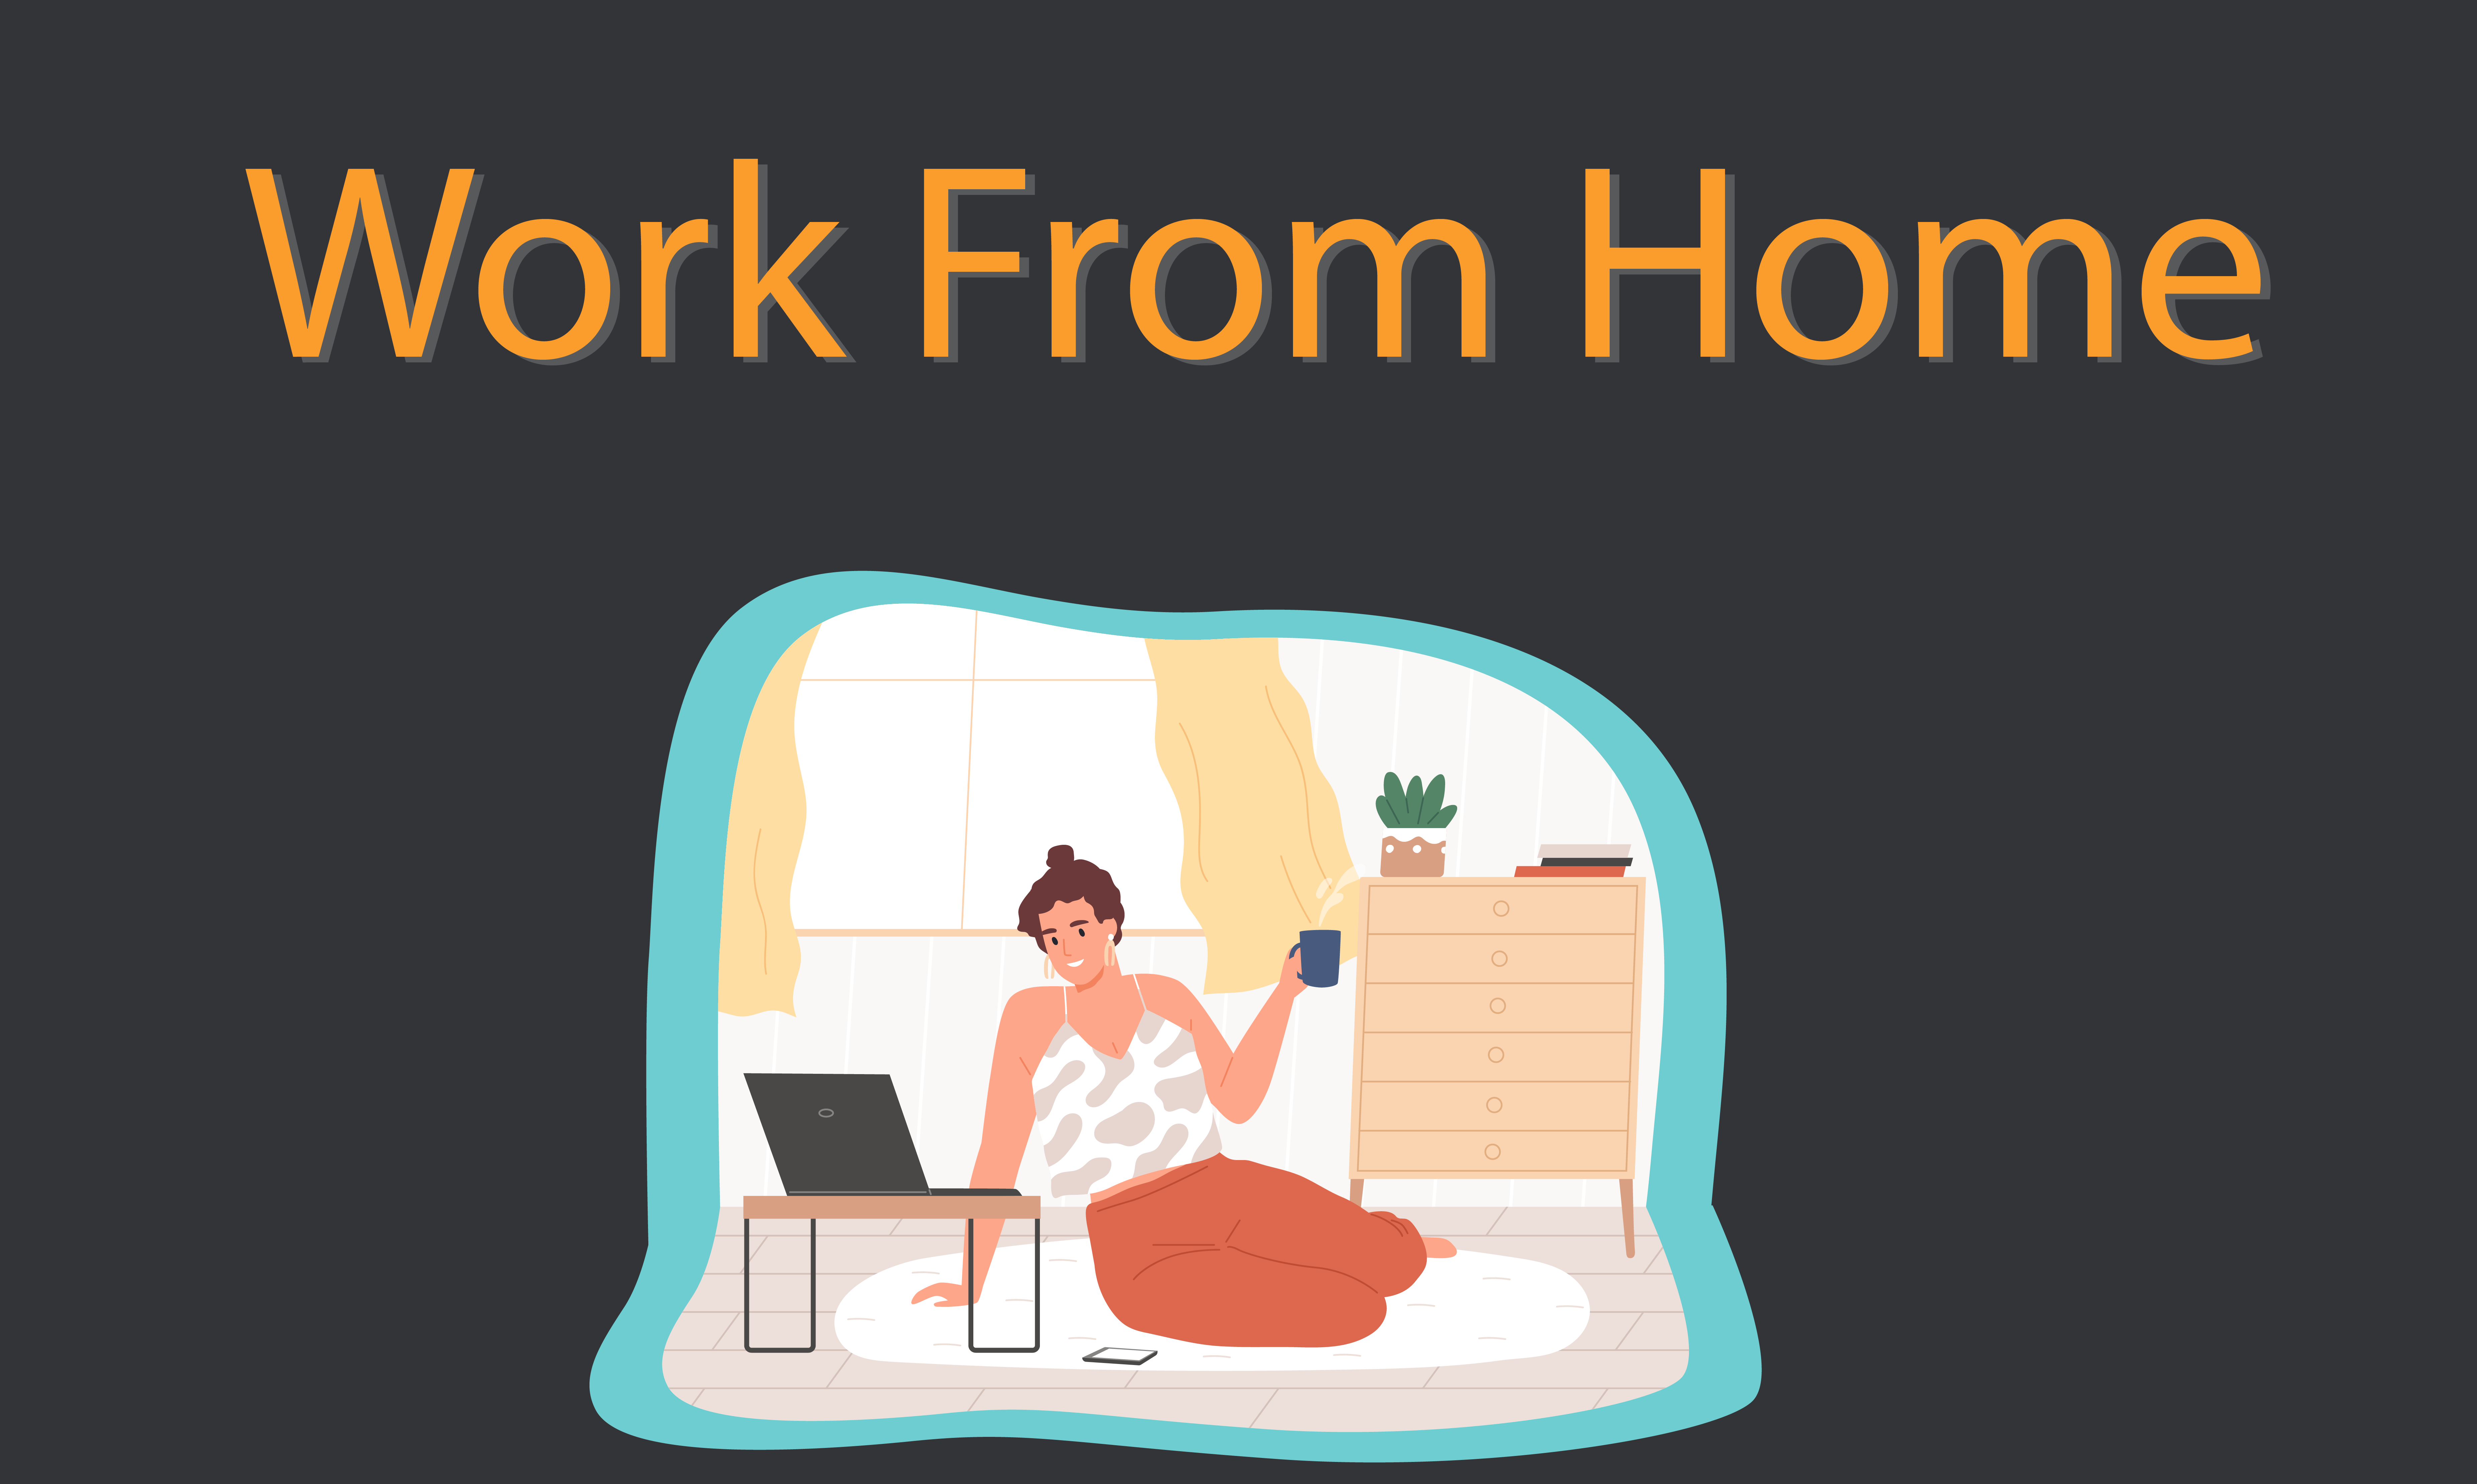 สรุปผลสำรวจการ Work From Home จากกลุ่มตัวอย่างทั่วโลก